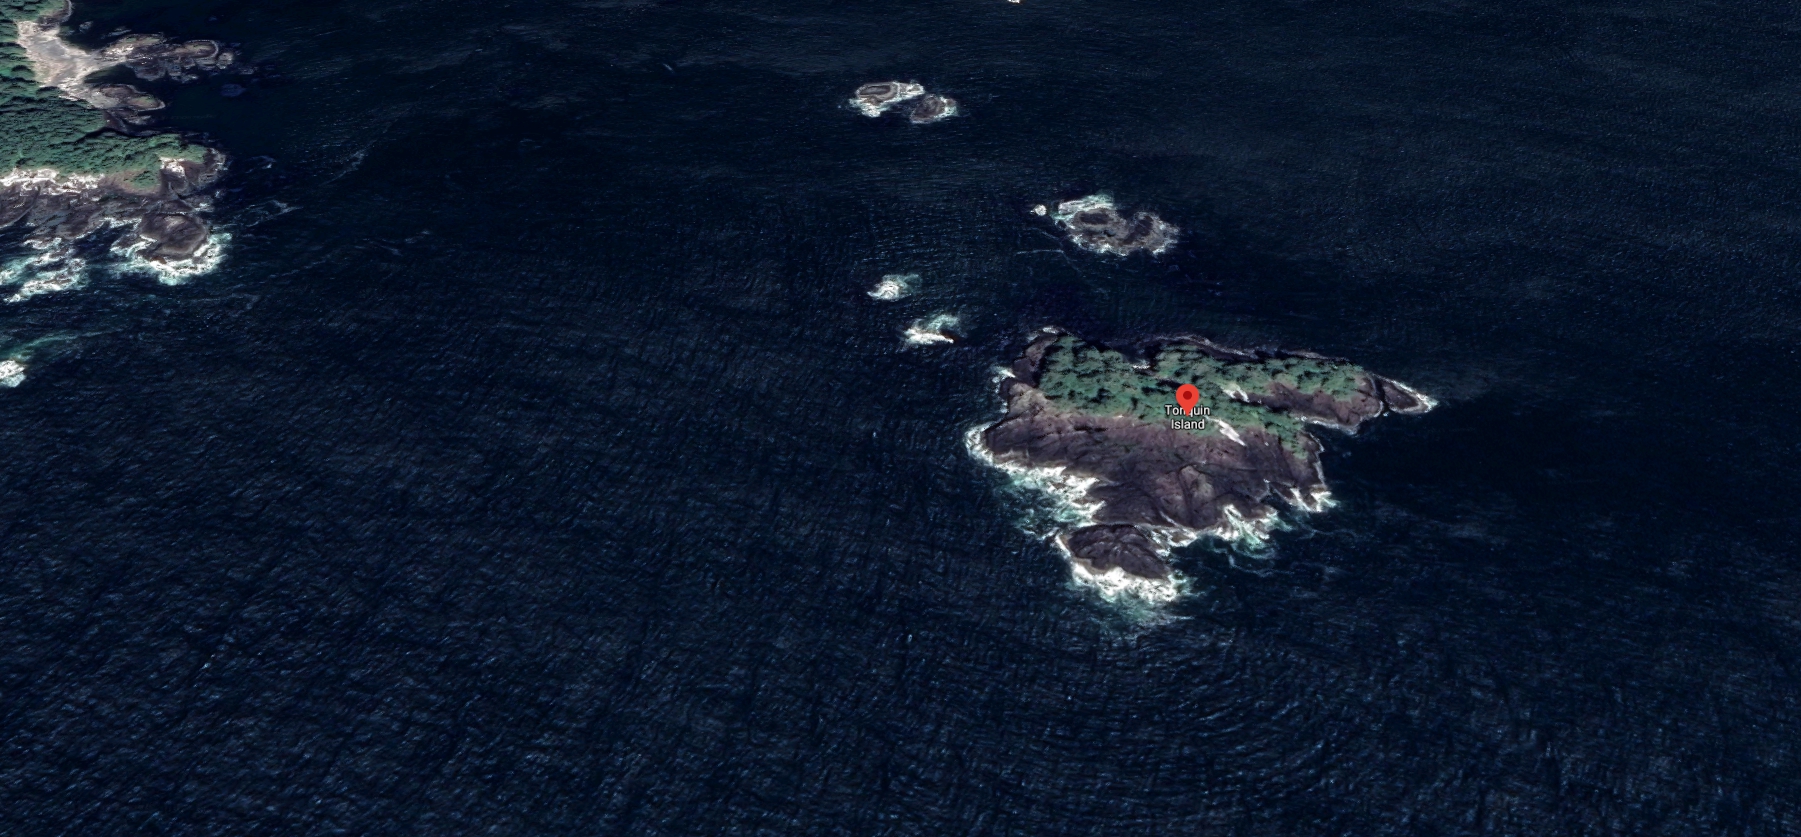 Tonquin Island